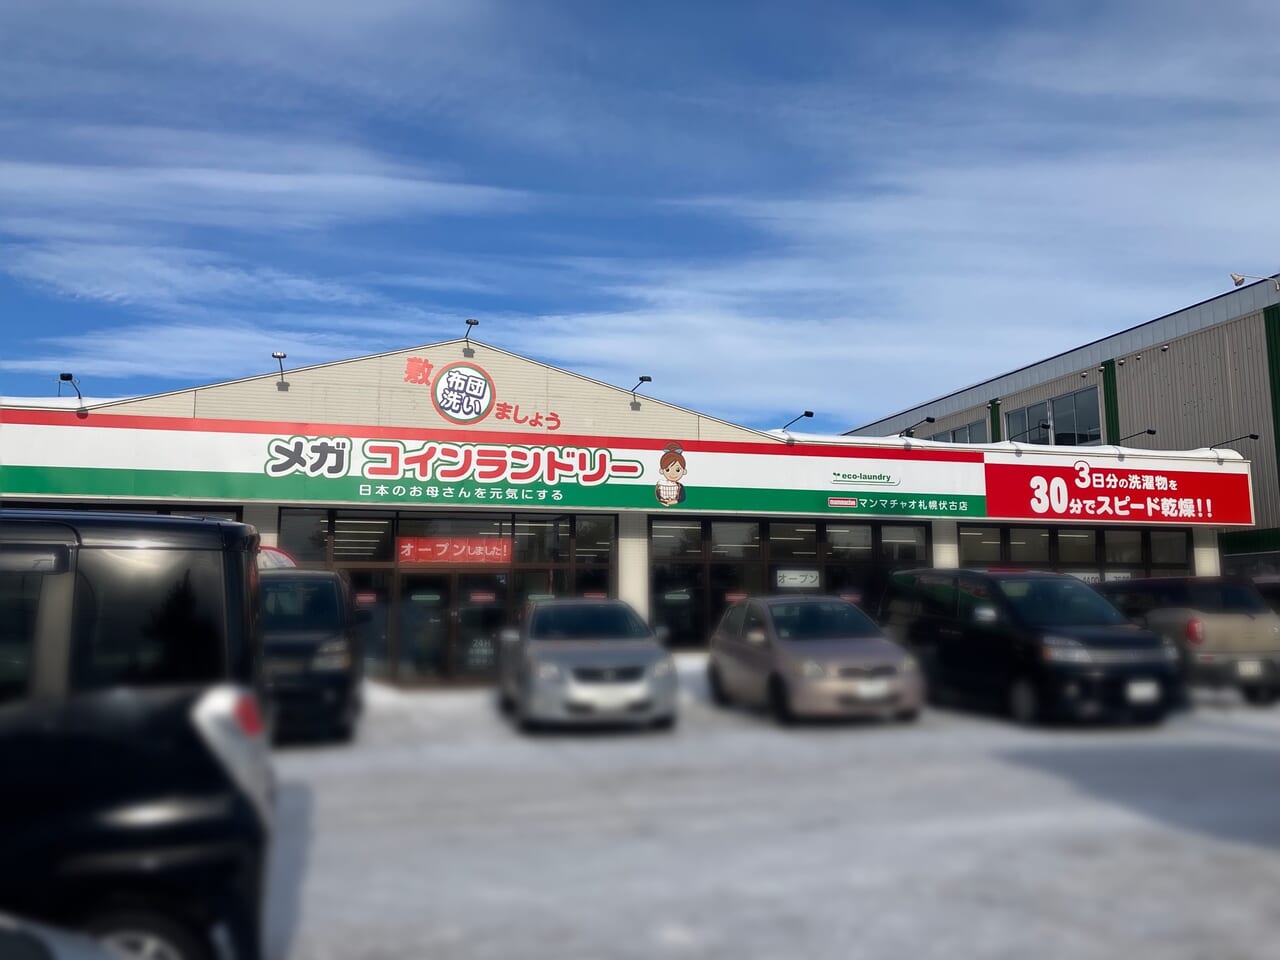 メガサイズのコインランドリーが伏古に登場！「マンマチャオ 札幌伏古店」がオープンセール中です！